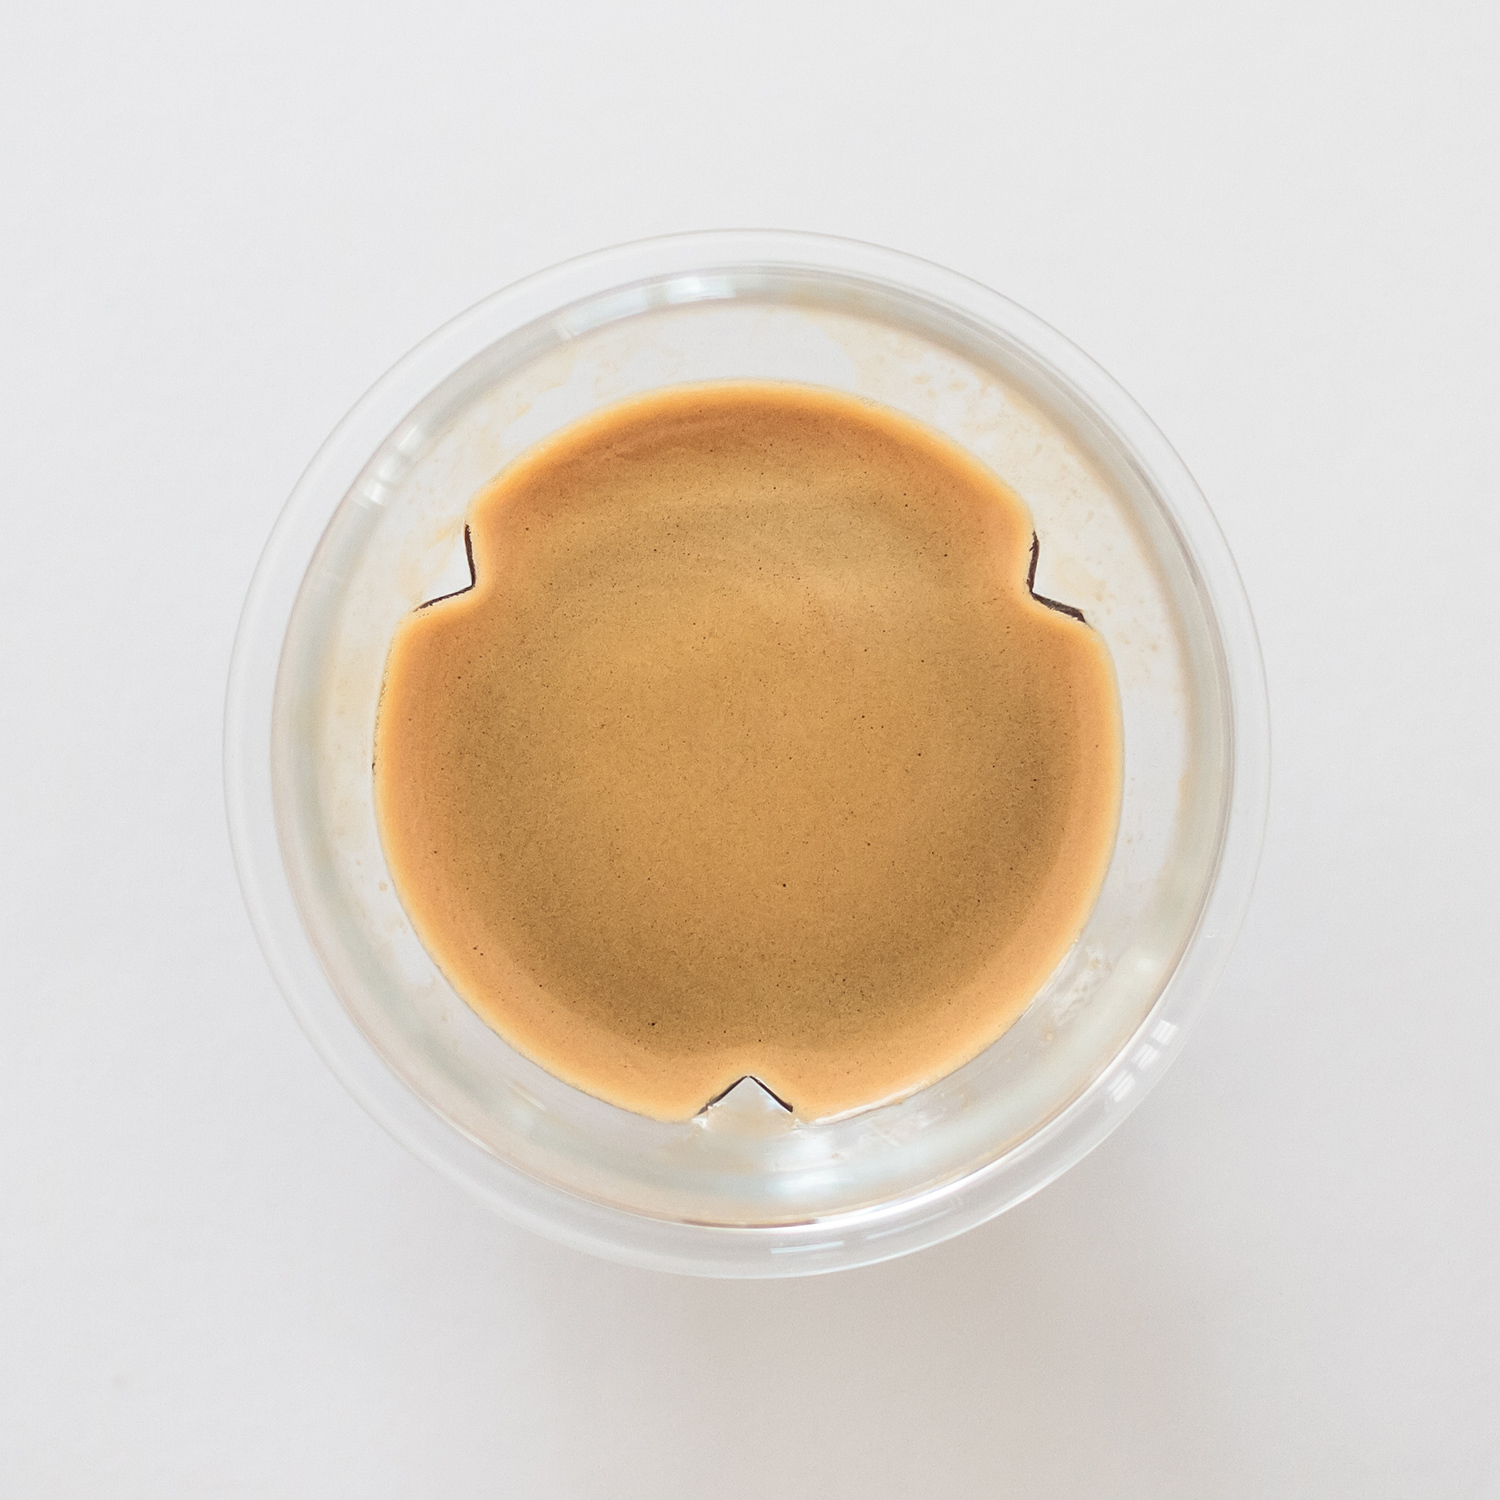 Kruve Propel Espresso Glass Set 75 ml / 2.5 oz